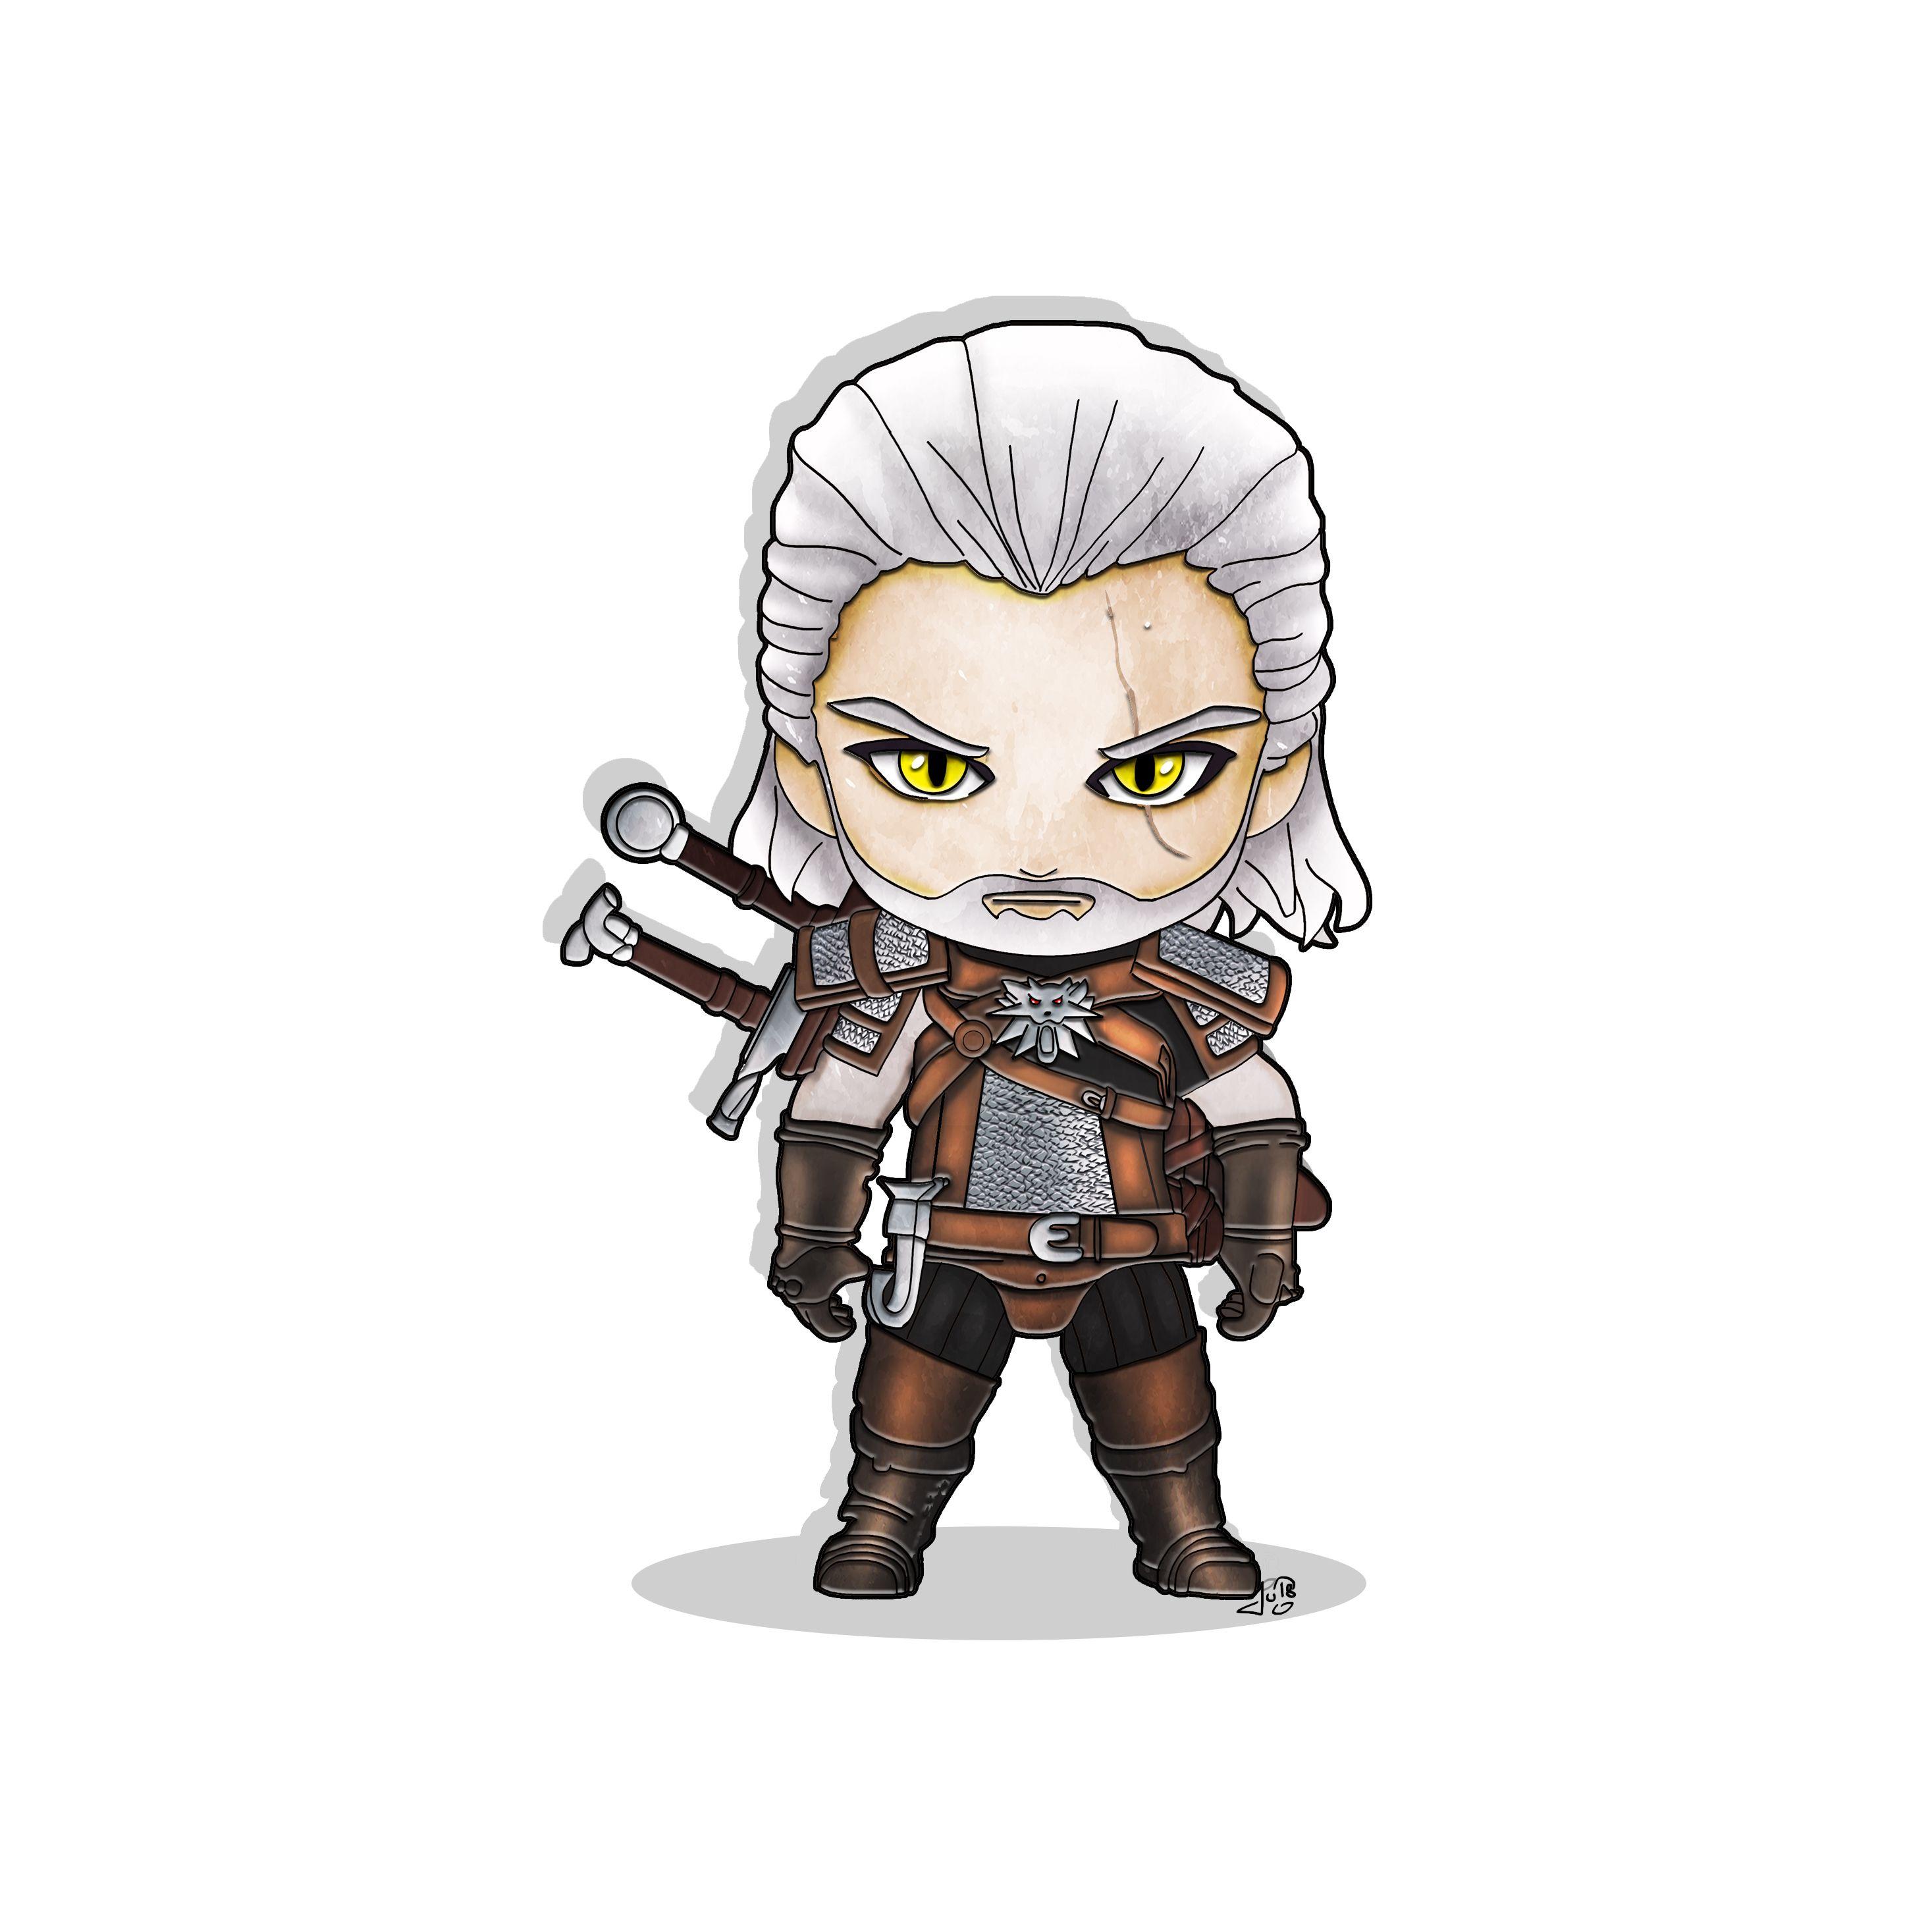 Geralt The witcher, jeux vidéos, fanart, chibi, illustration